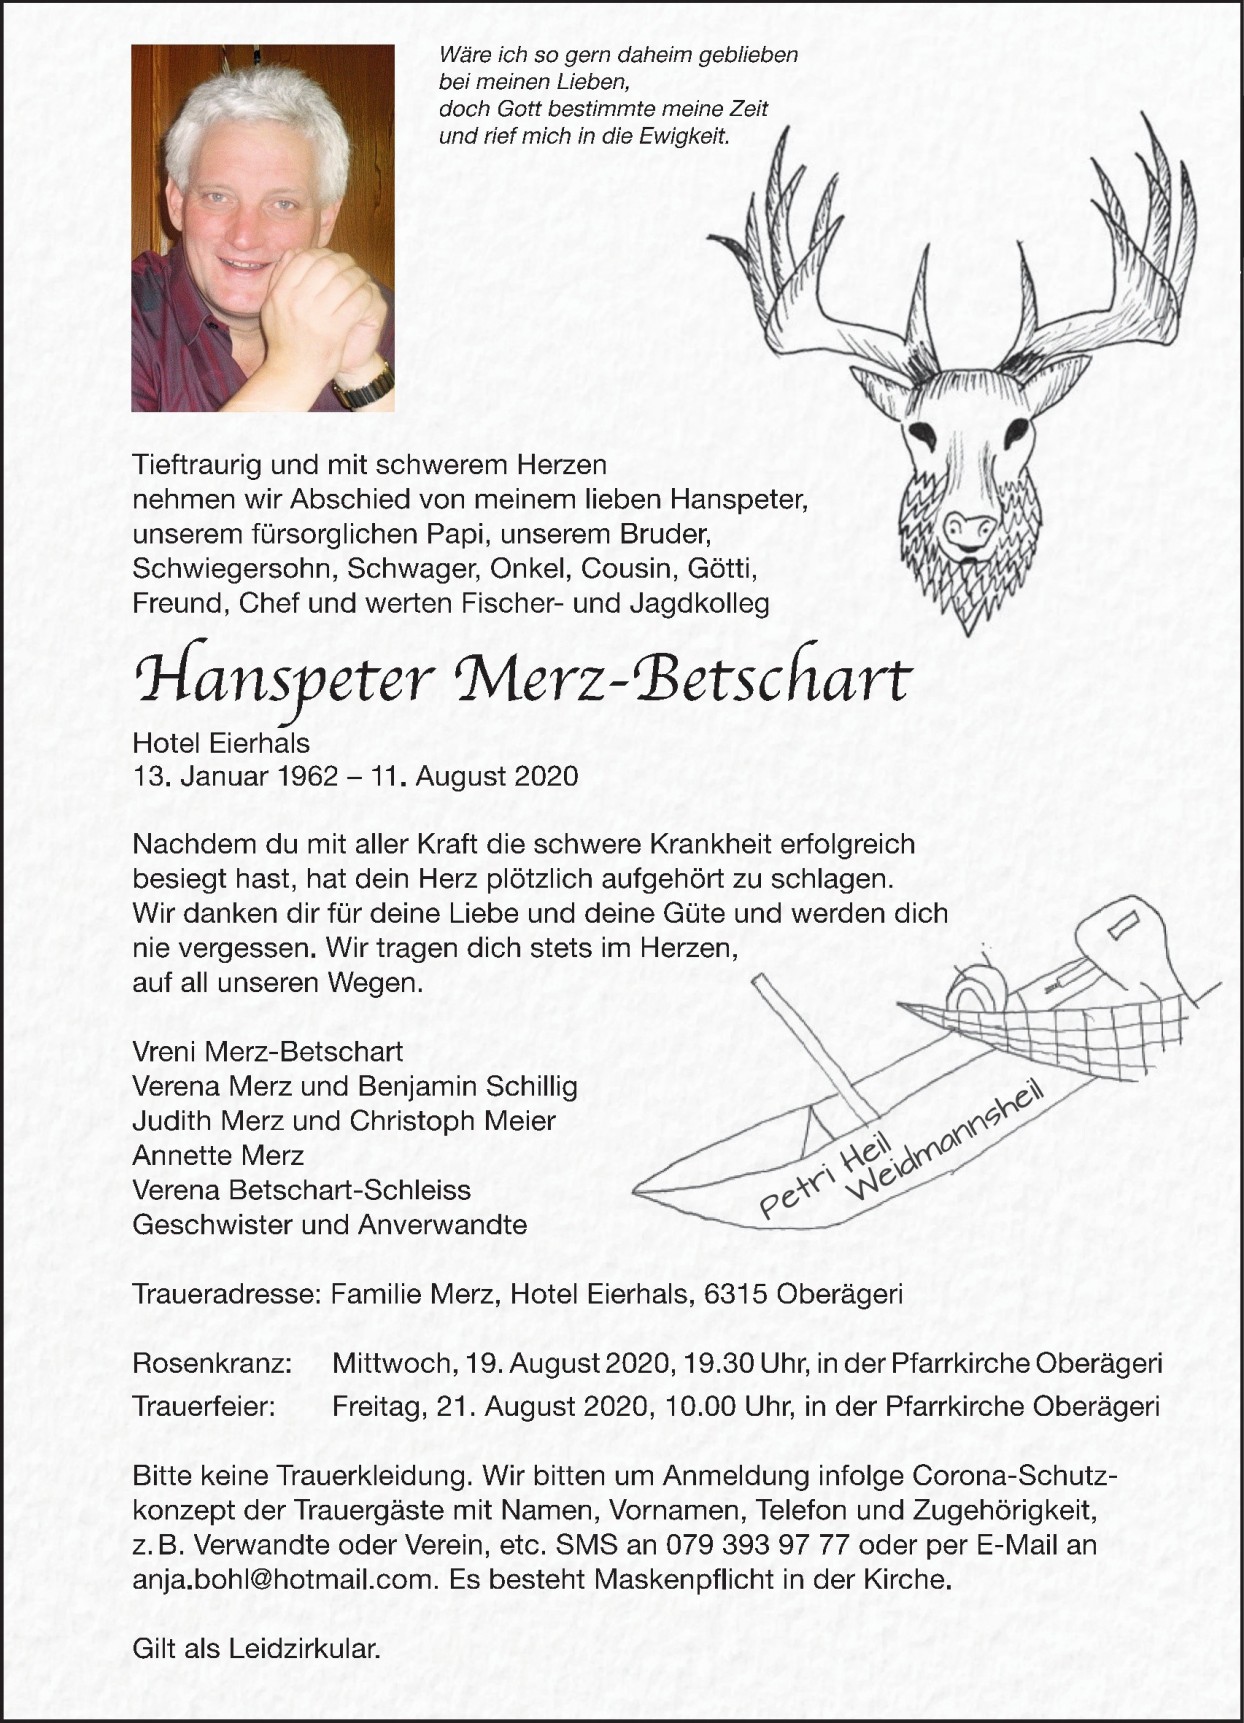 Hanspeter Merz-Betschart